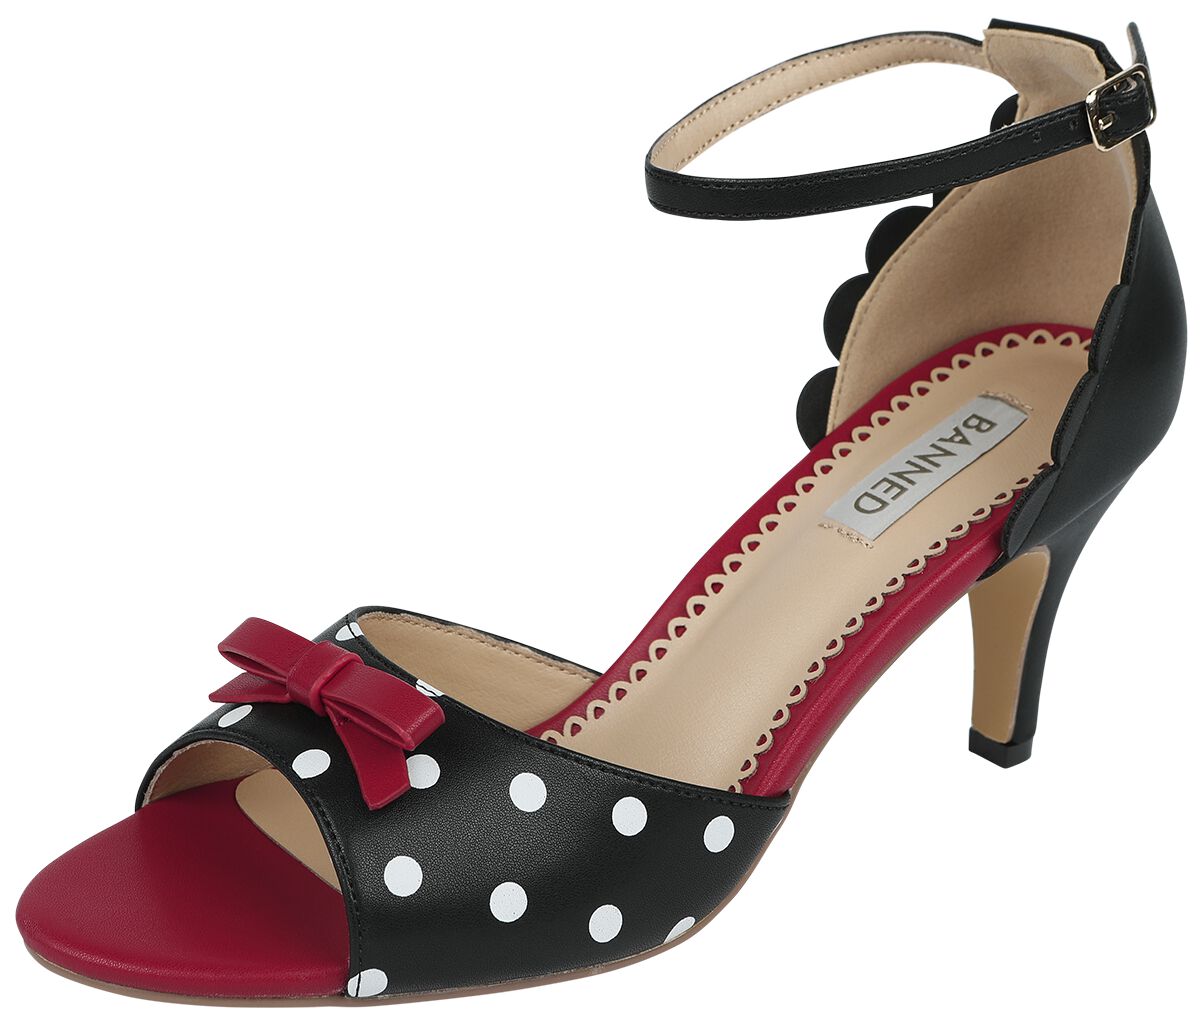 Banned Retro - Rockabilly High Heel - Poppy Polka Open Toe Sandals - EU36 bis EU41 - für Damen - Größe EU37 - schwarz/rot